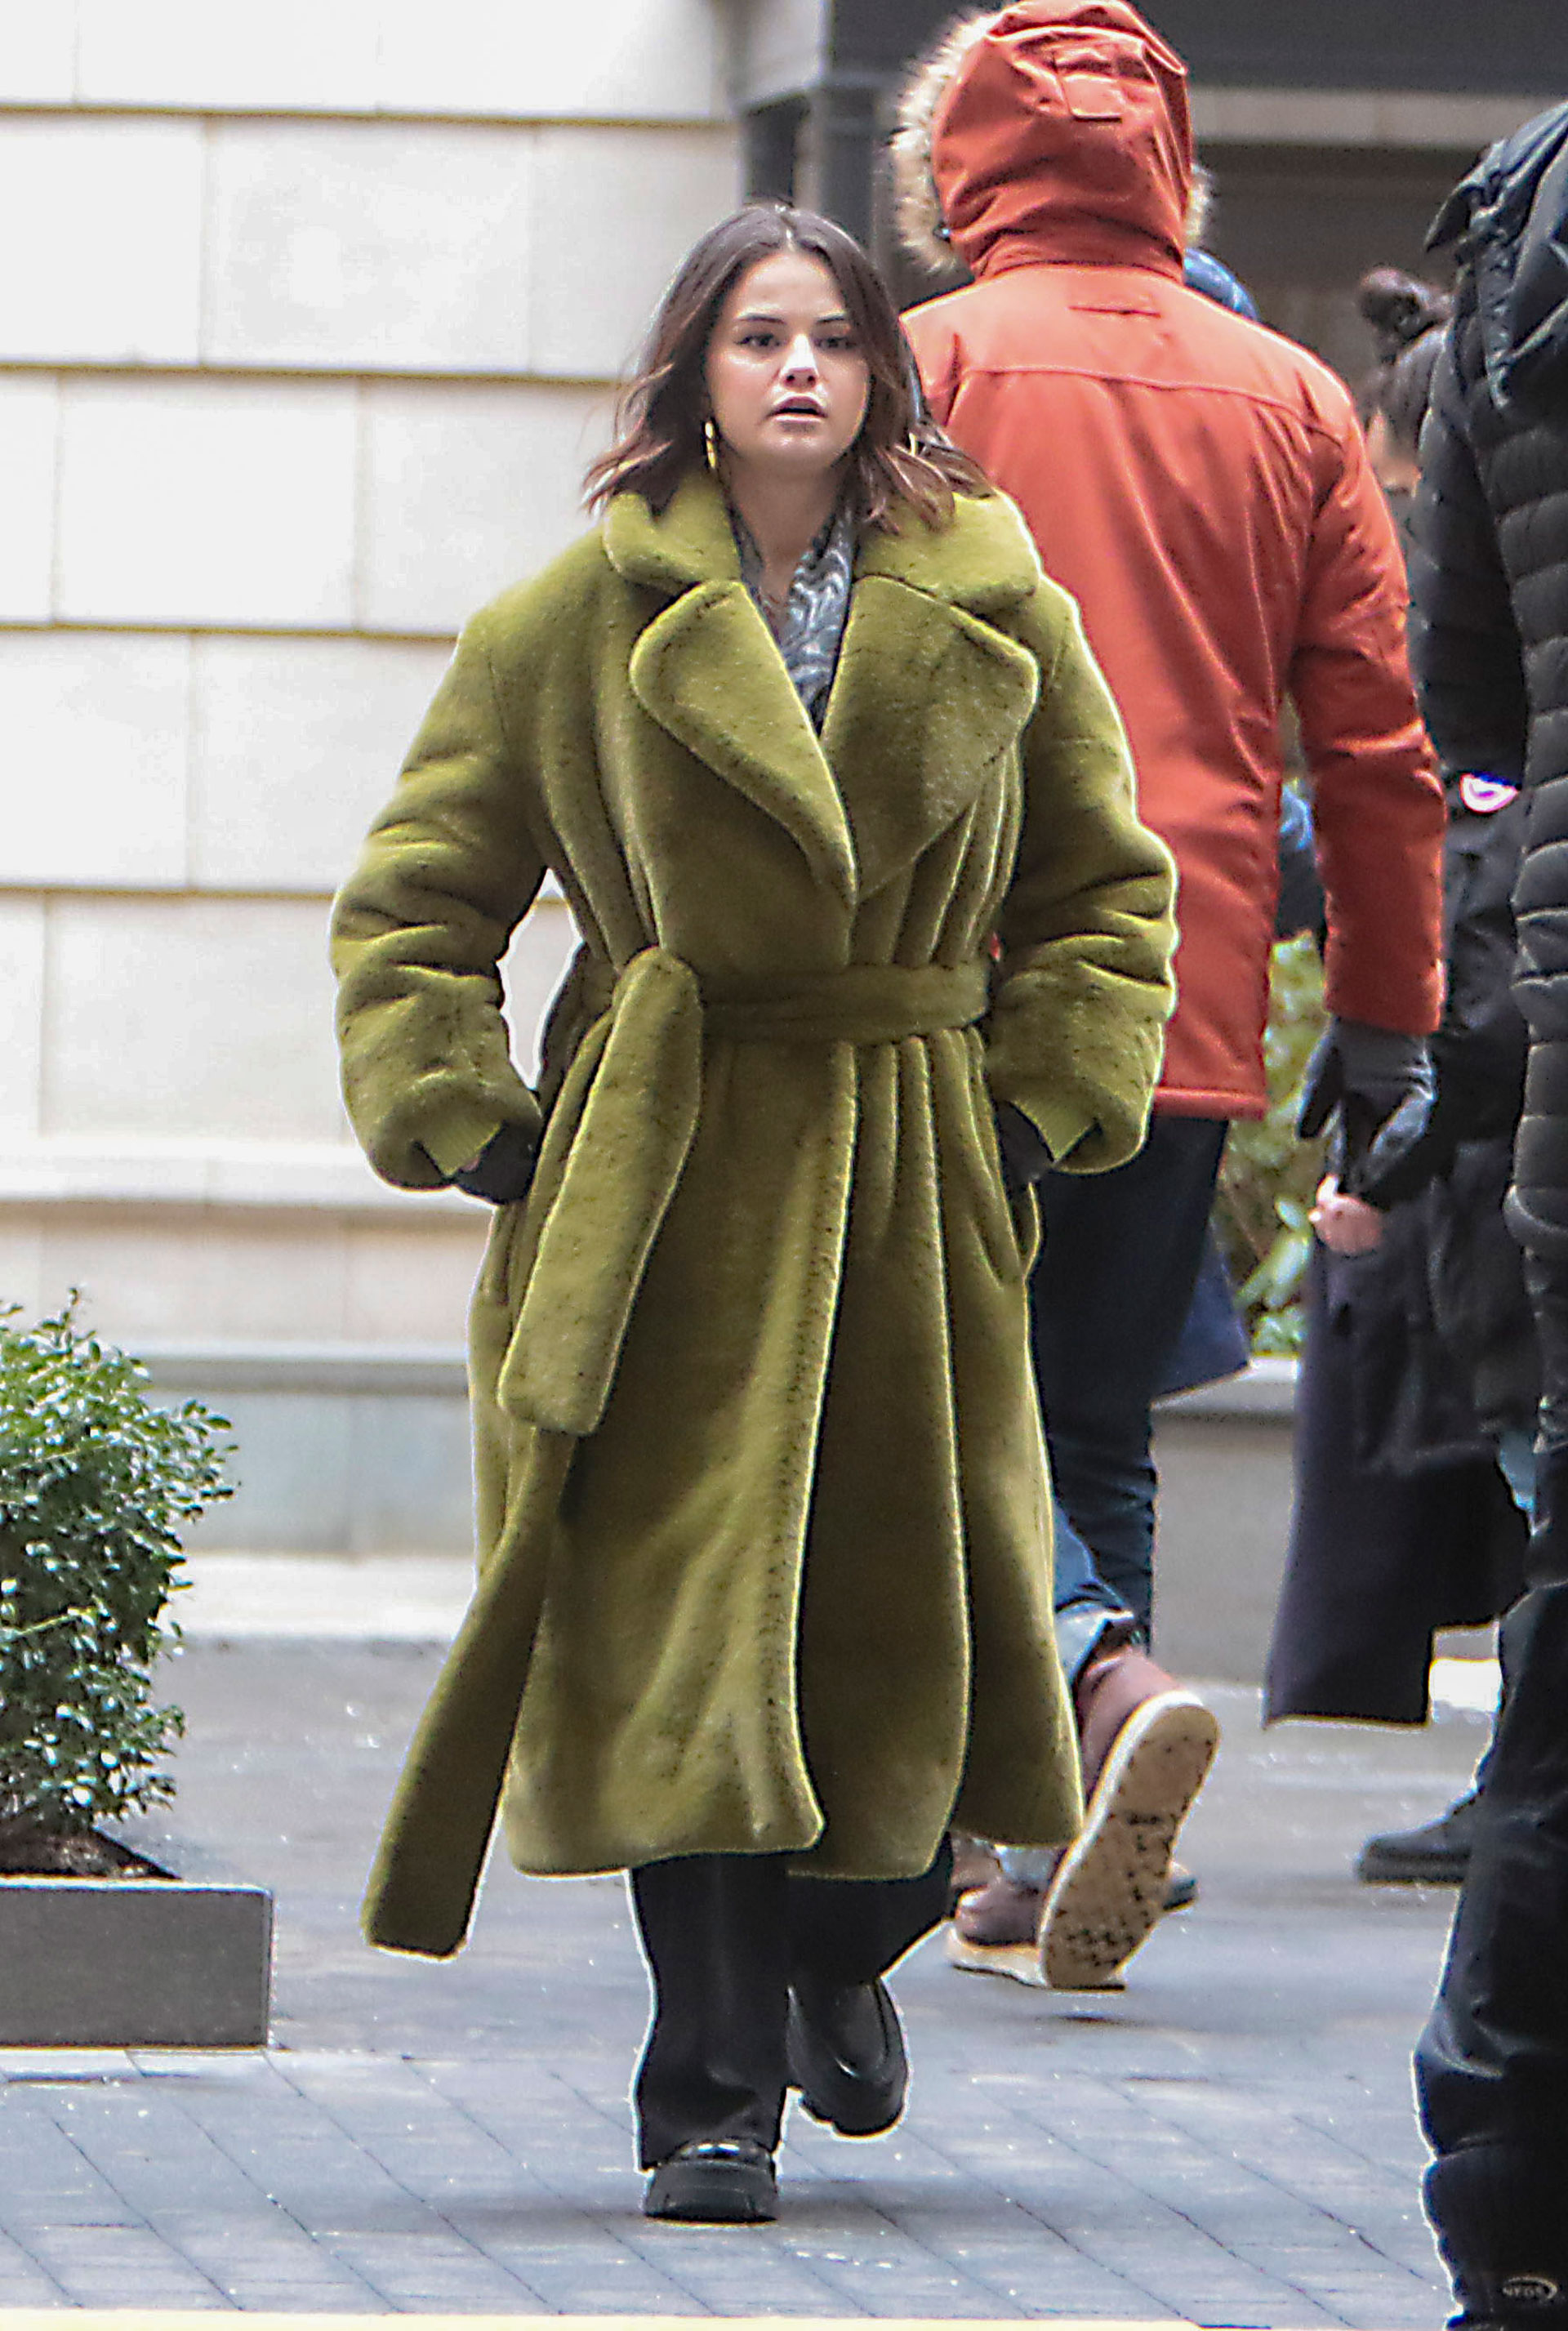 Selena Gomez fue vista detrás de escena durante el rodaje de "Only Murders in the Building", cuyo set de filmación está ubicado en Nueva York. La actriz lucía un llamativo tapado verde de piel sintética